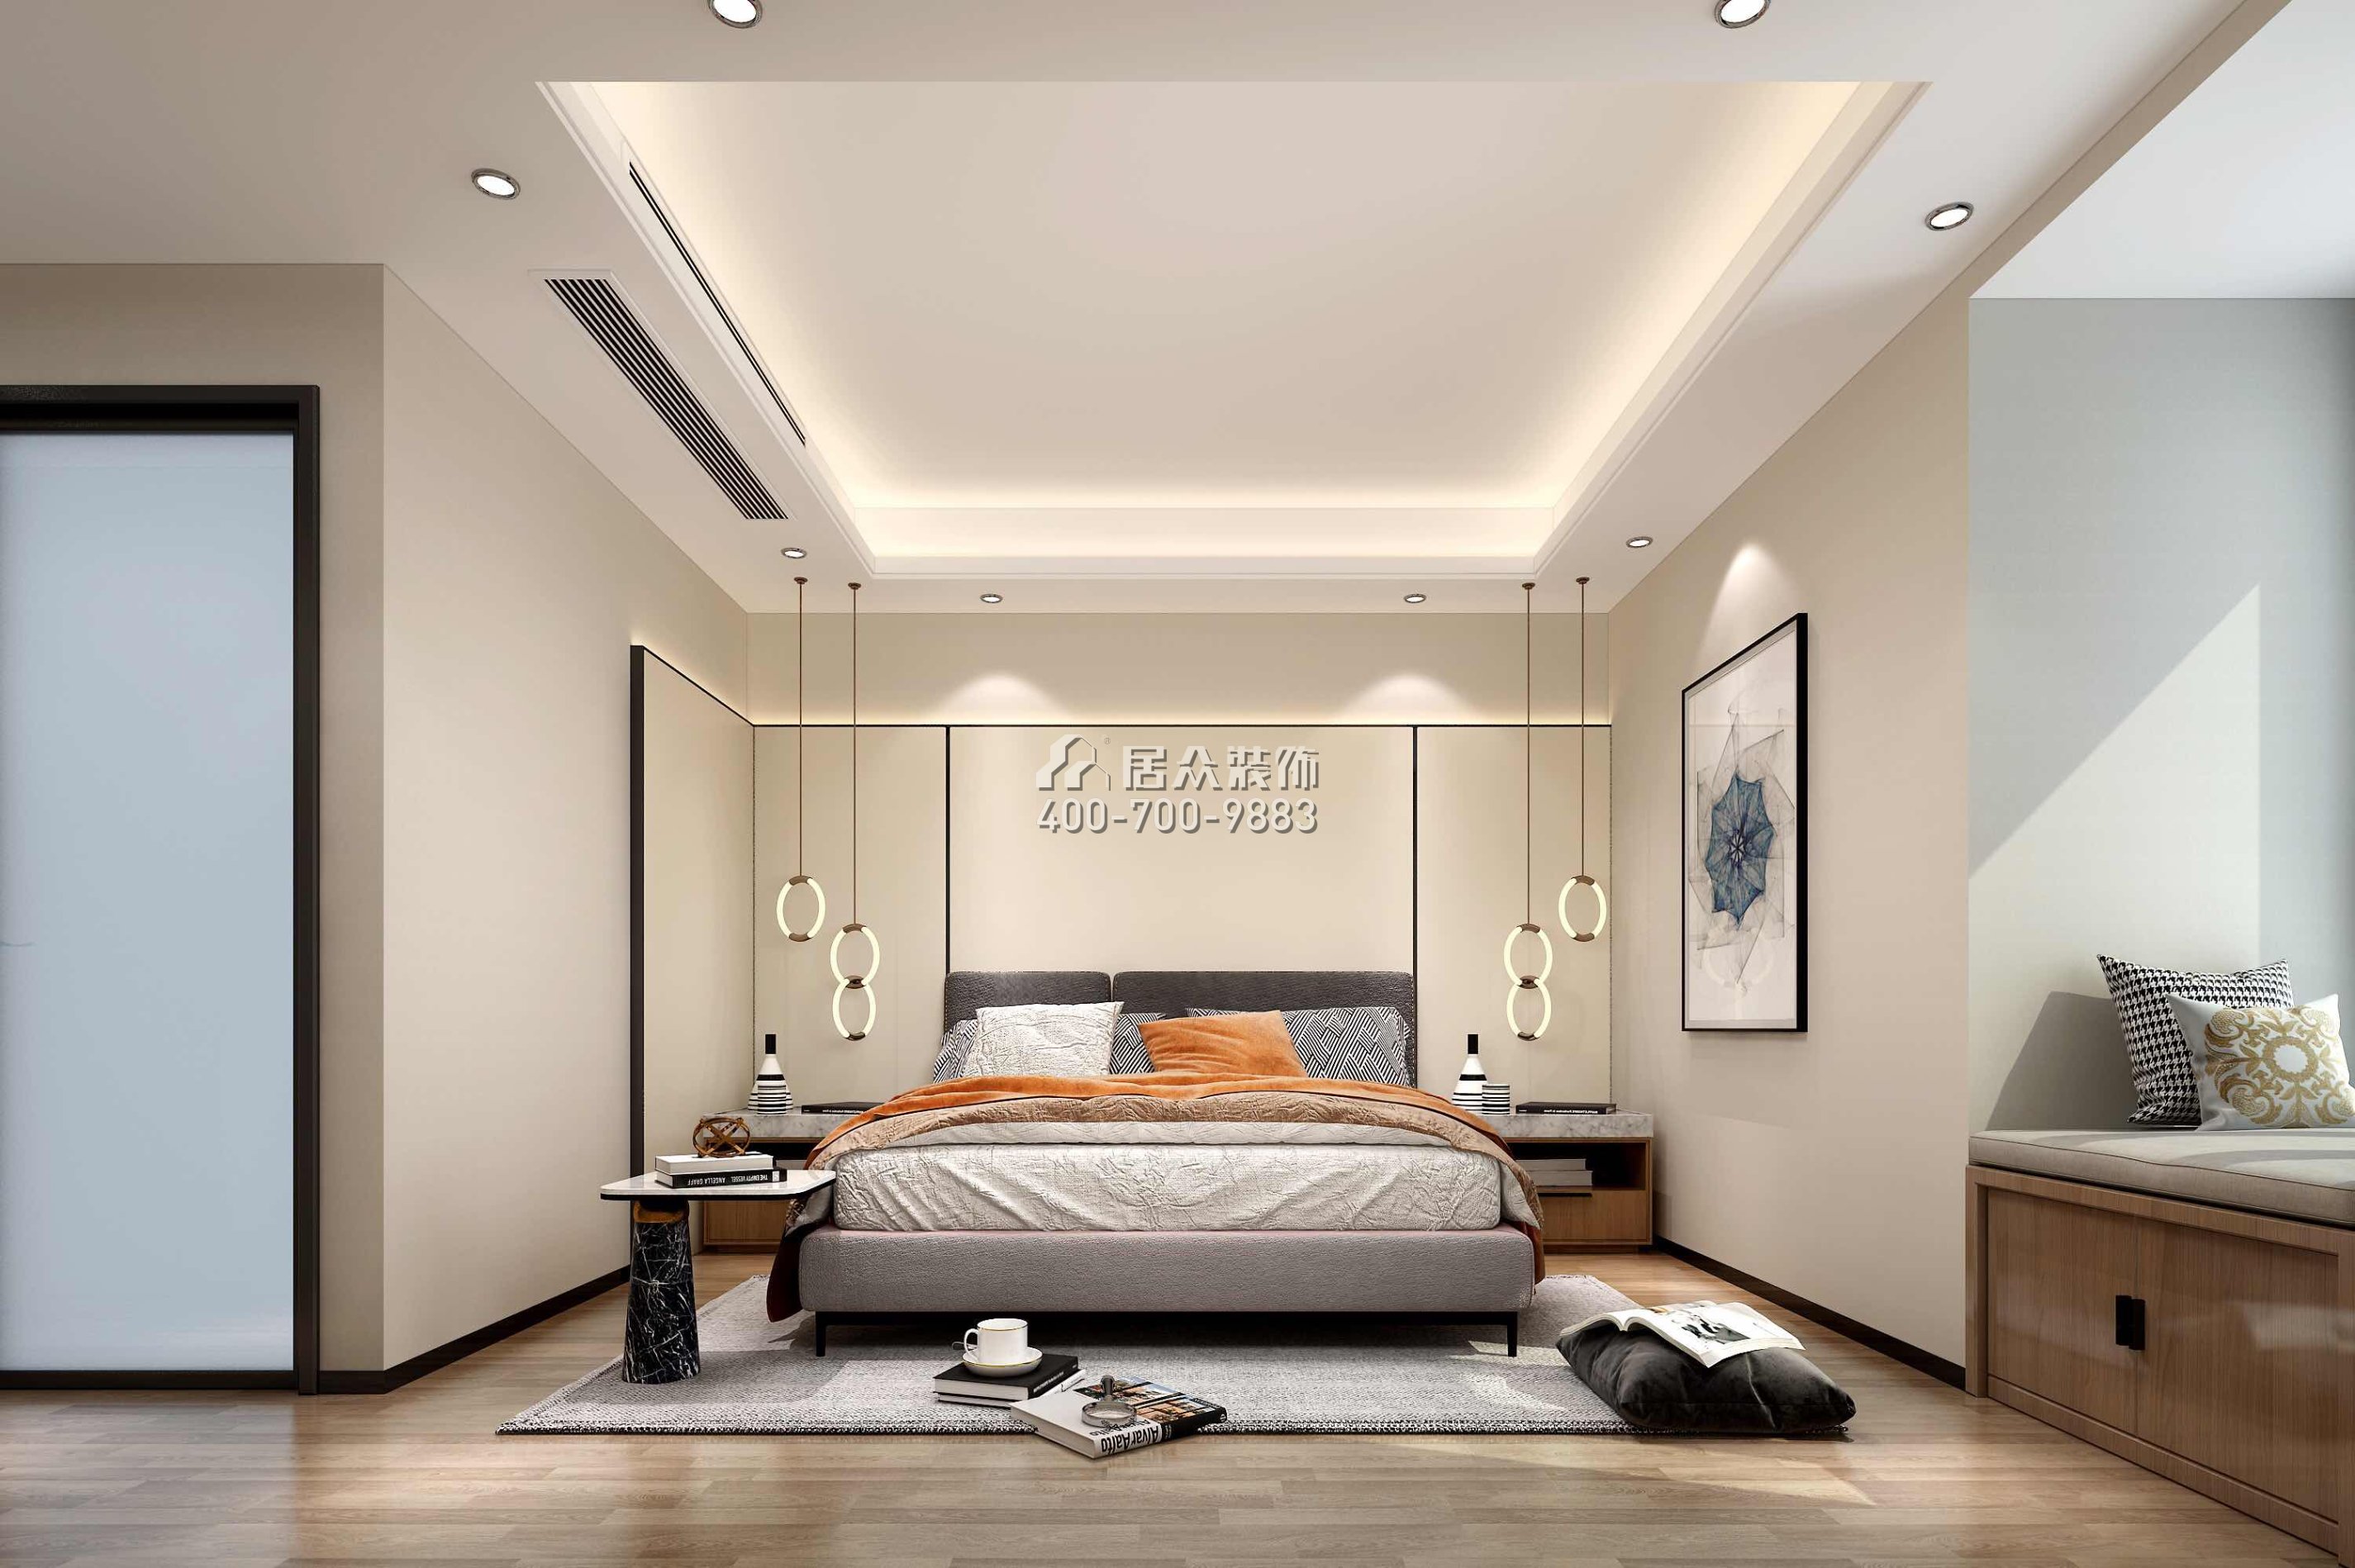 华润小径湾110平方米现代简约风格平层户型卧室装修效果图